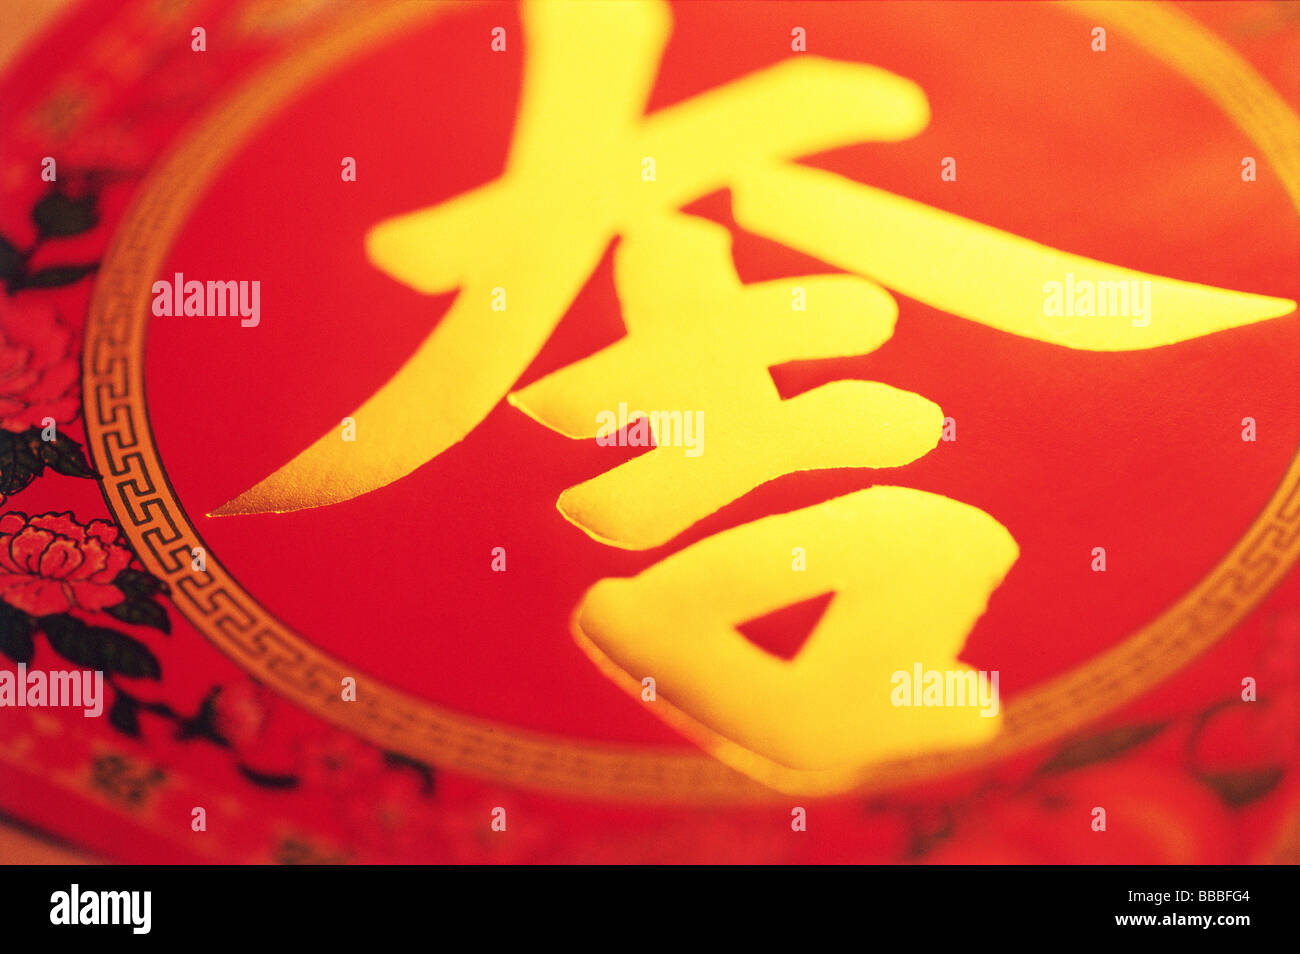 Caractère chinois signifiant 'chance' (prononcé 'Ji') Banque D'Images